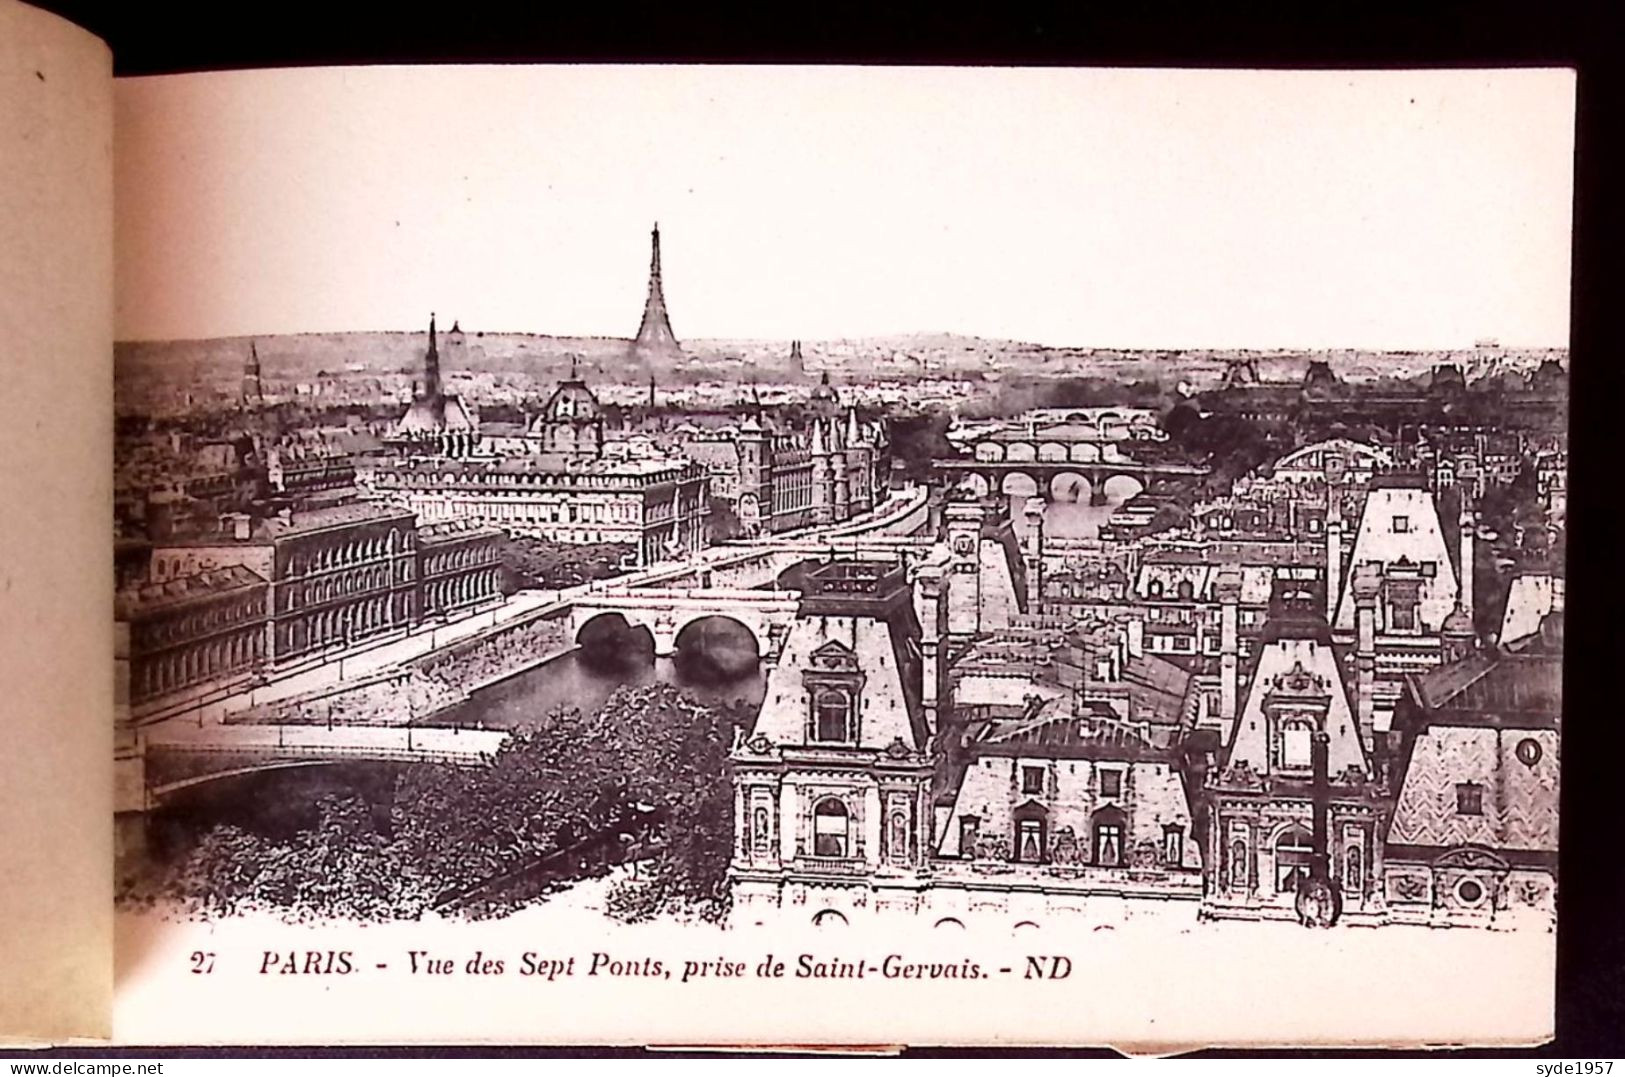 carnet de 19 cartes sur 40  Cpa de PAris, monuments, places, trams, voitures -édition Levy & Neurdein Réunis